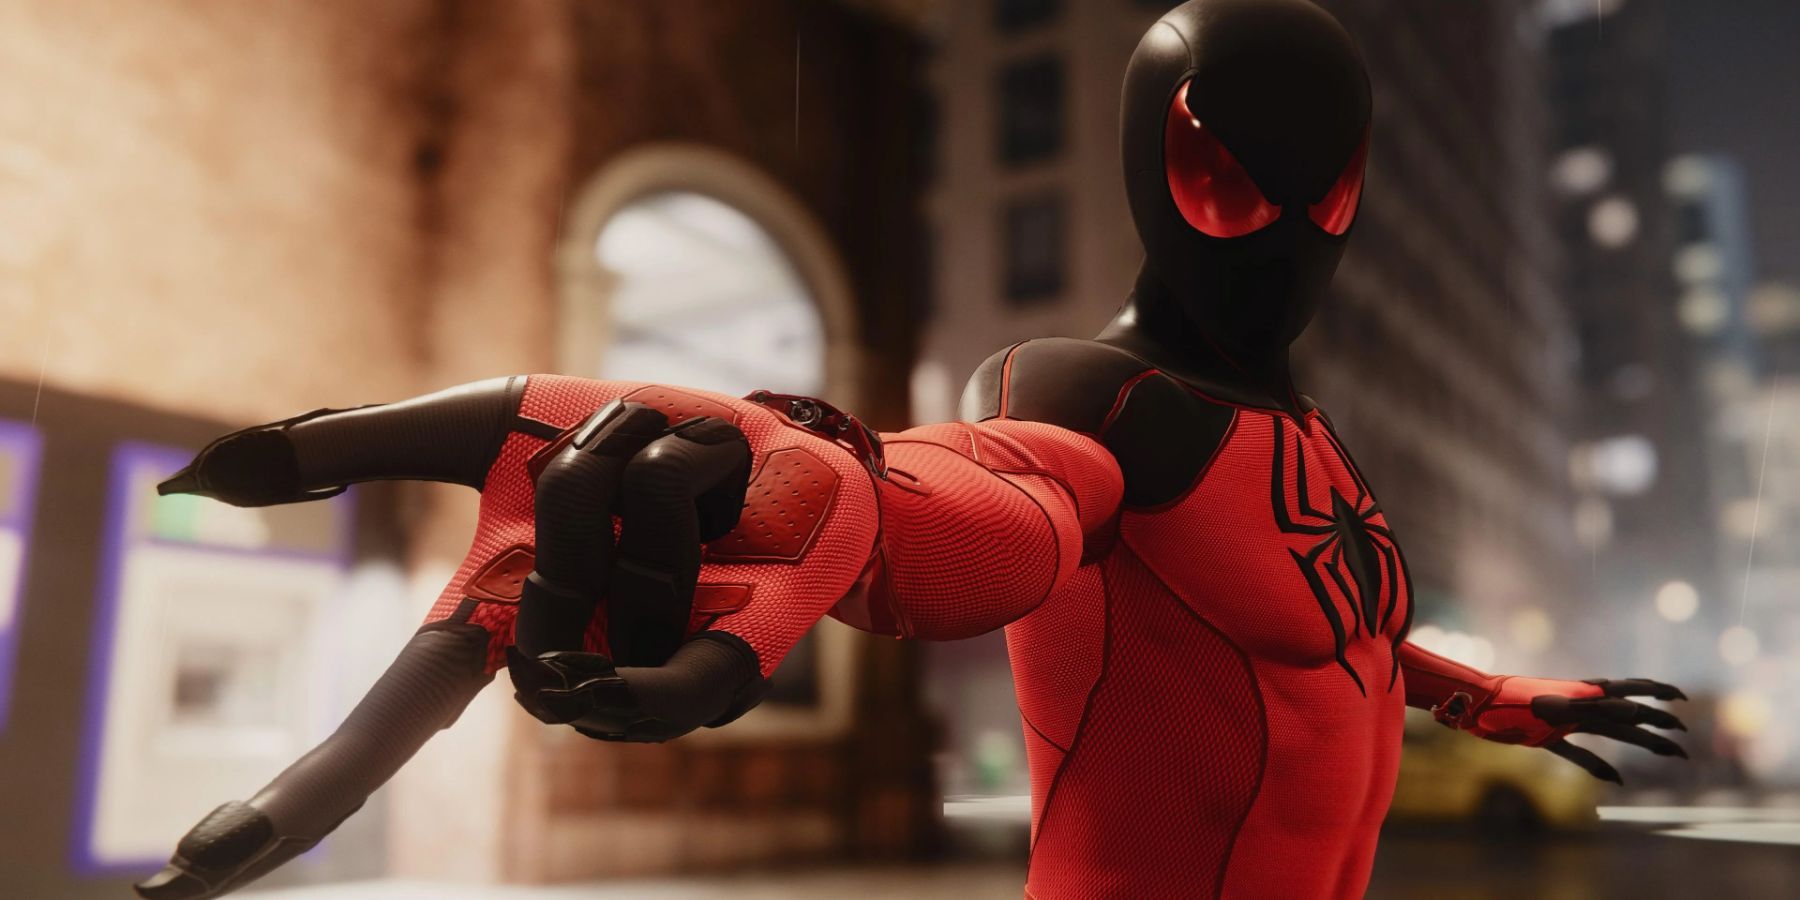 Marvel' Spider-Man Remastered já está cheio de mods no PC